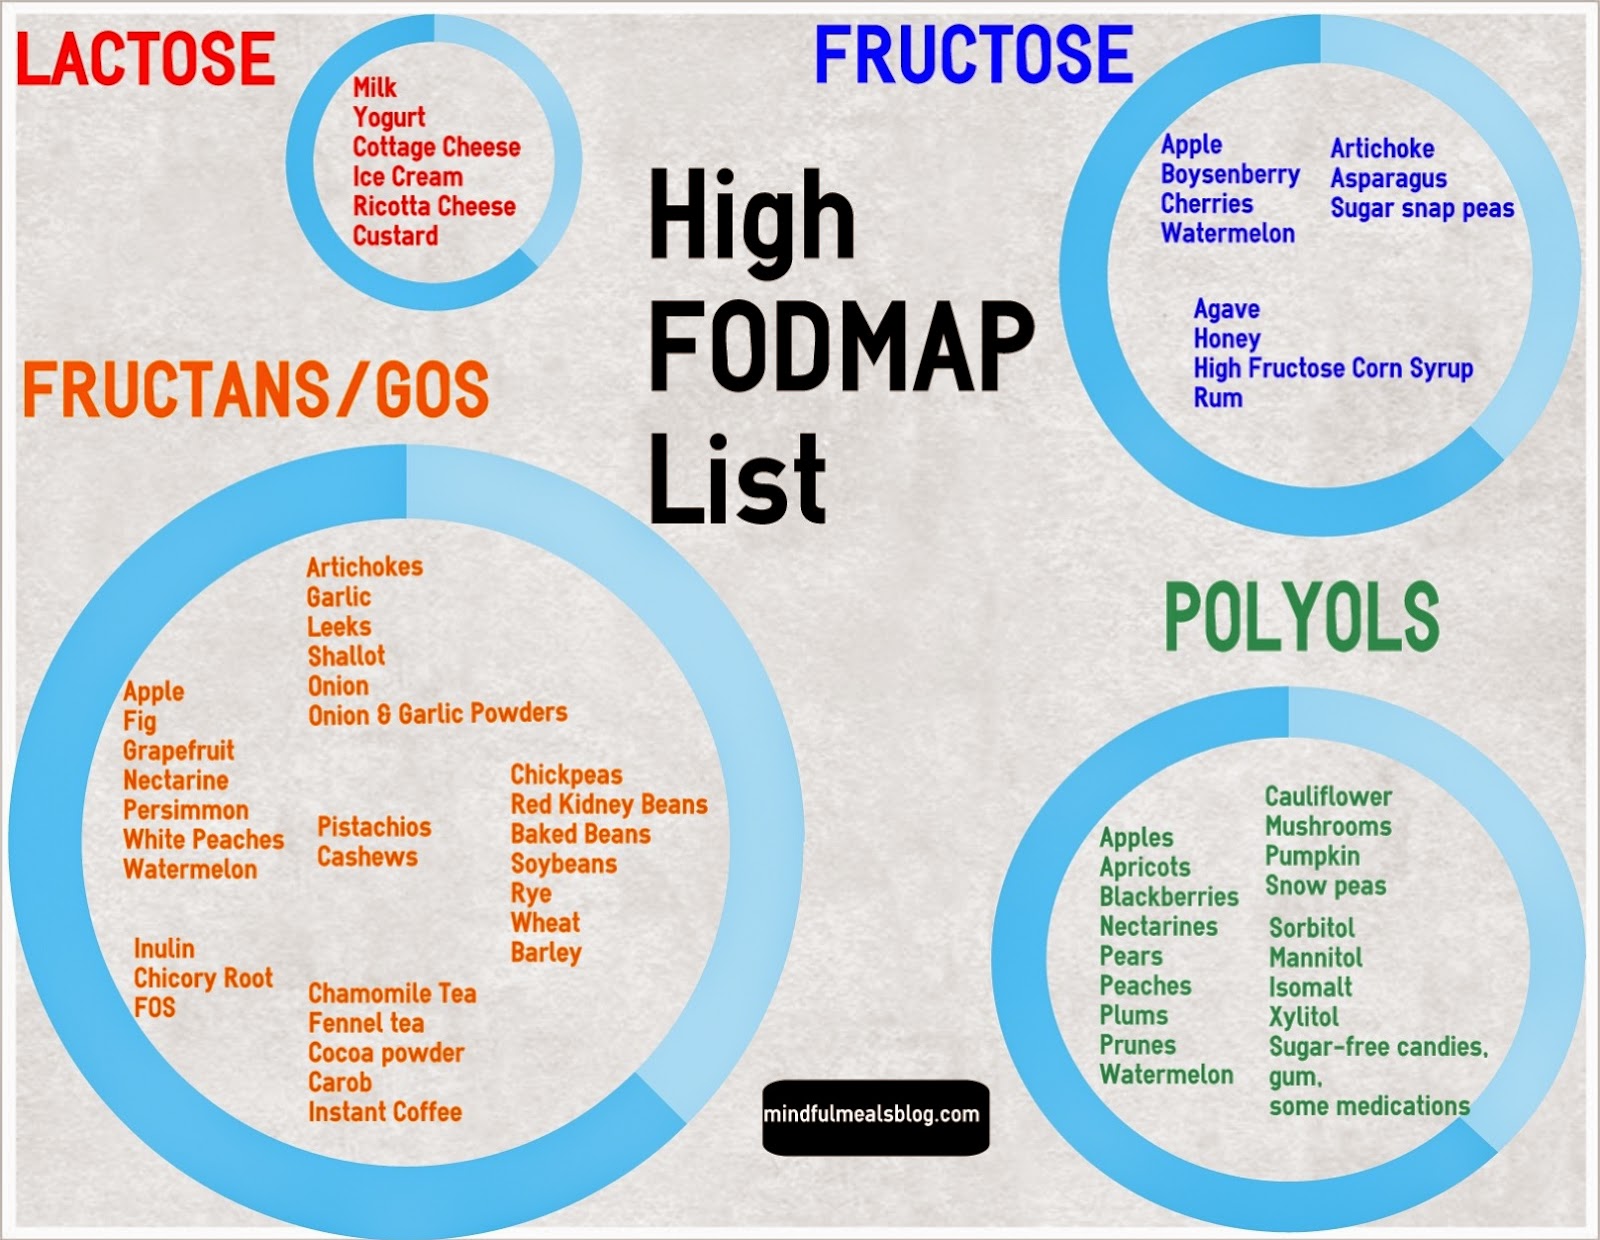 Alimentos ricos en fodmap